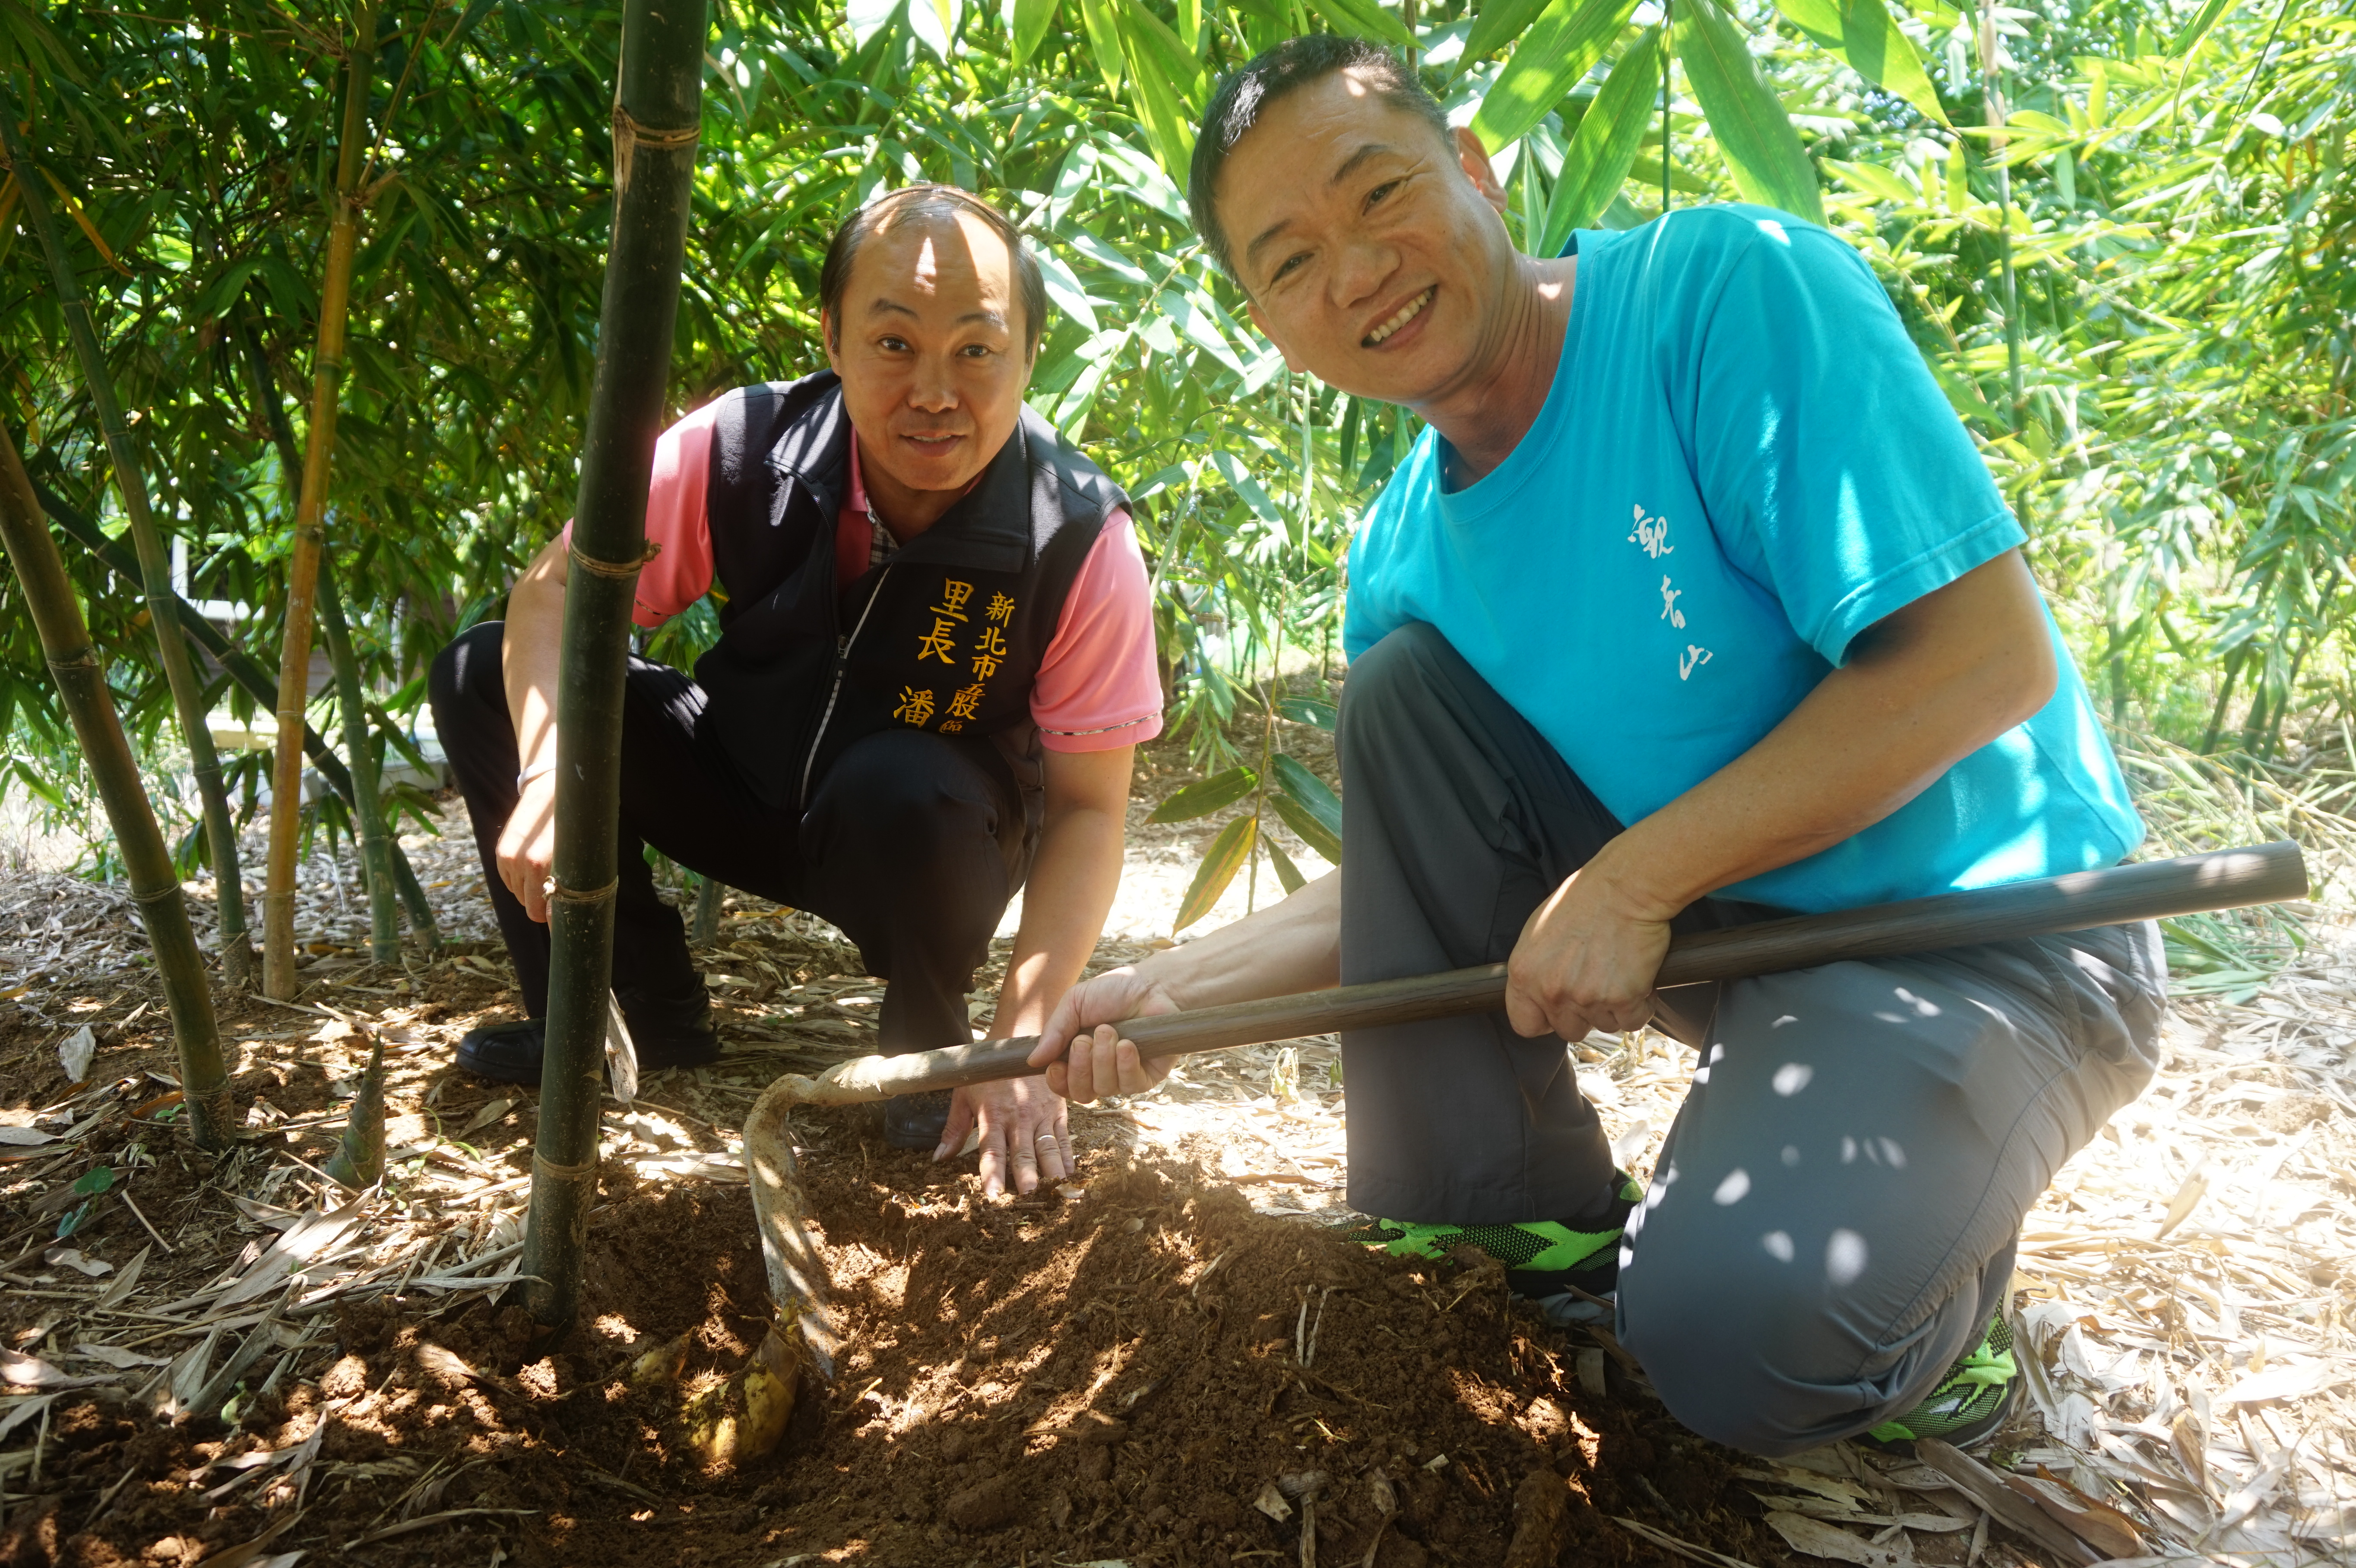 潘明宏擔任里長11年，積極協助推廣地方農作，齊力帶領農民投入農村再生計畫，從整合農民力量做起，逐步改良傳統農作技術，以有機方式栽培精緻安全、無毒的綠竹筍。